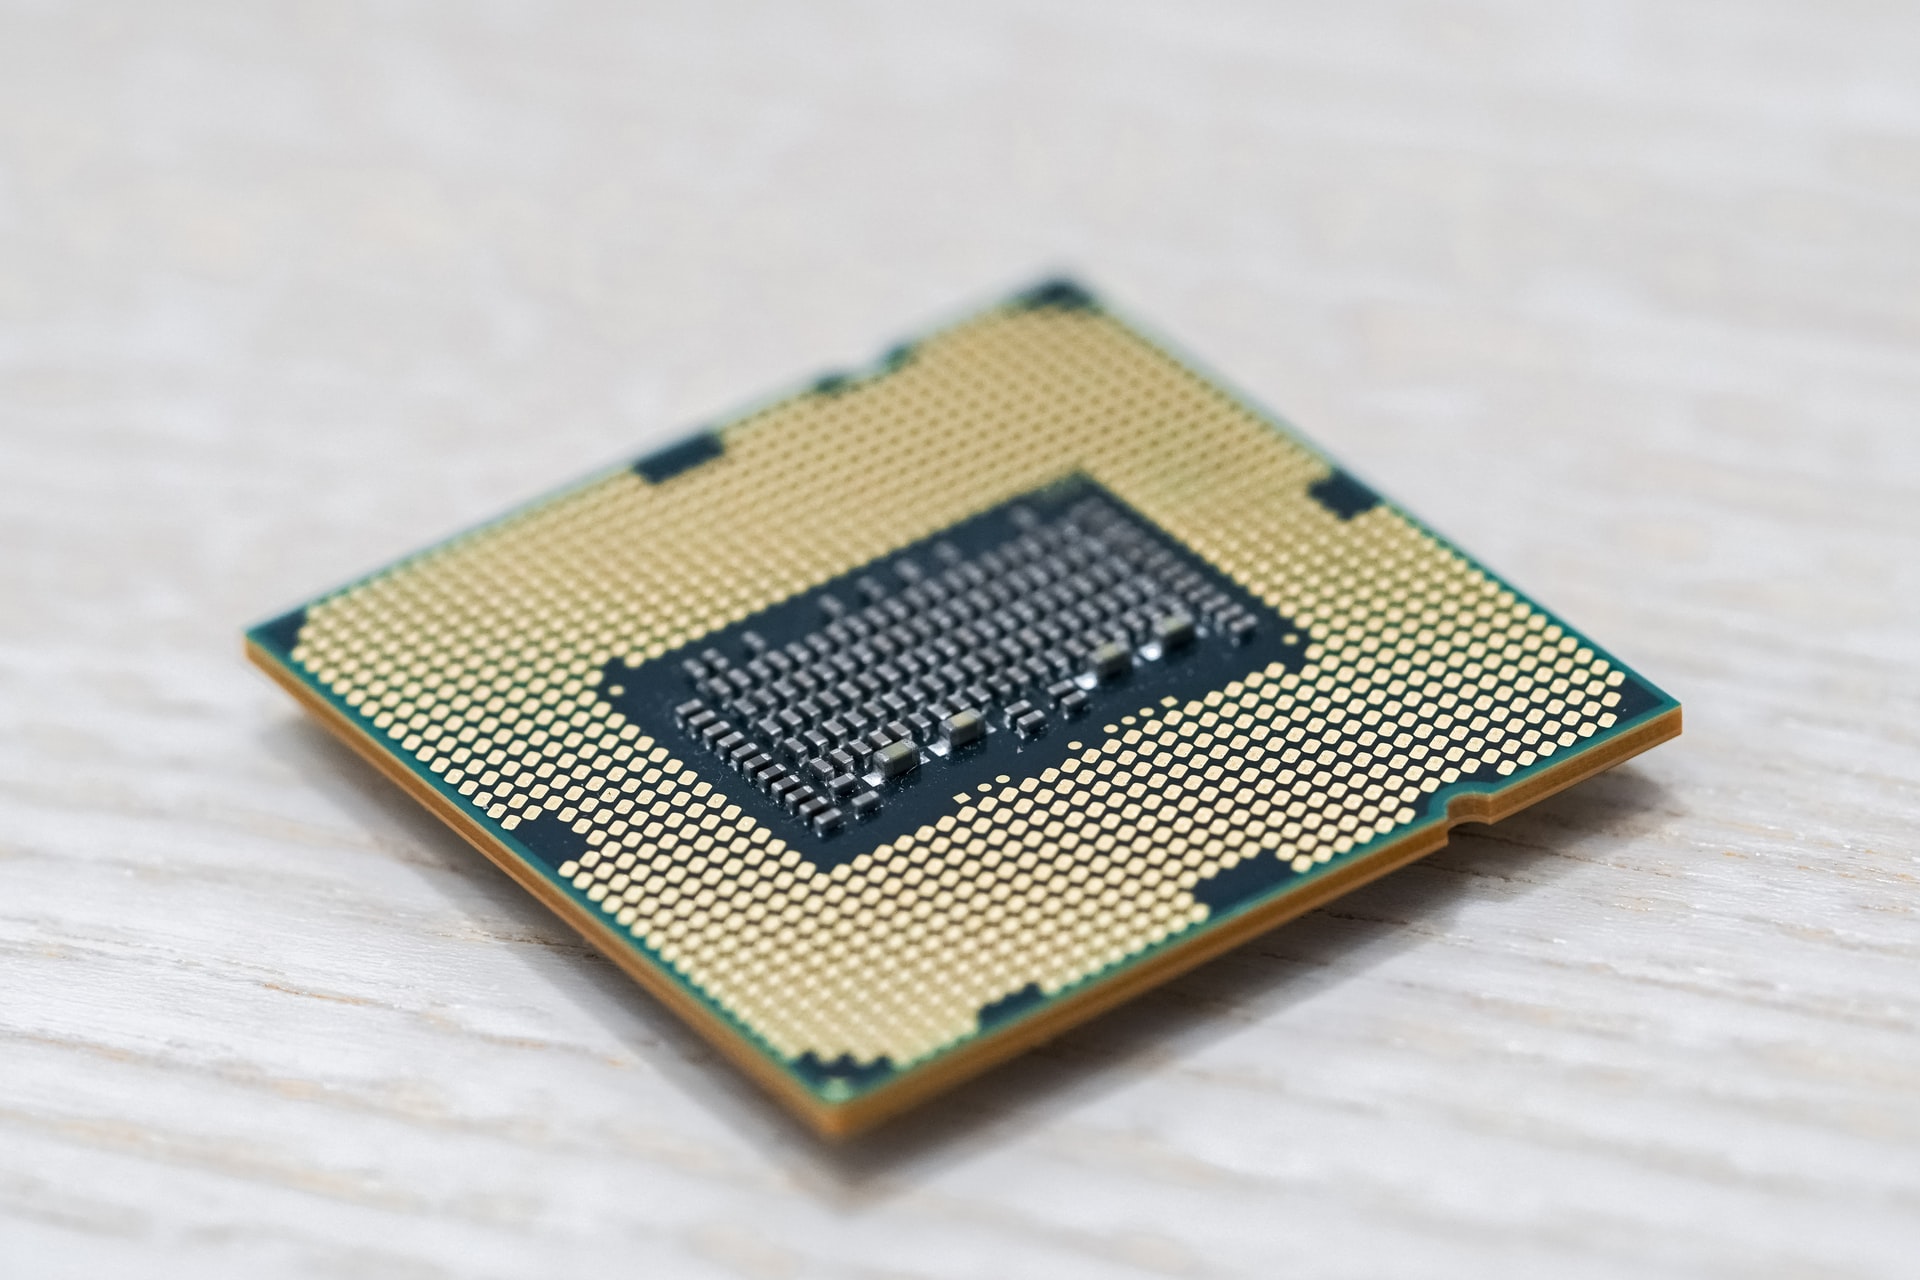 NVIDIA zapowiada gigantyczny procesor dla HPC